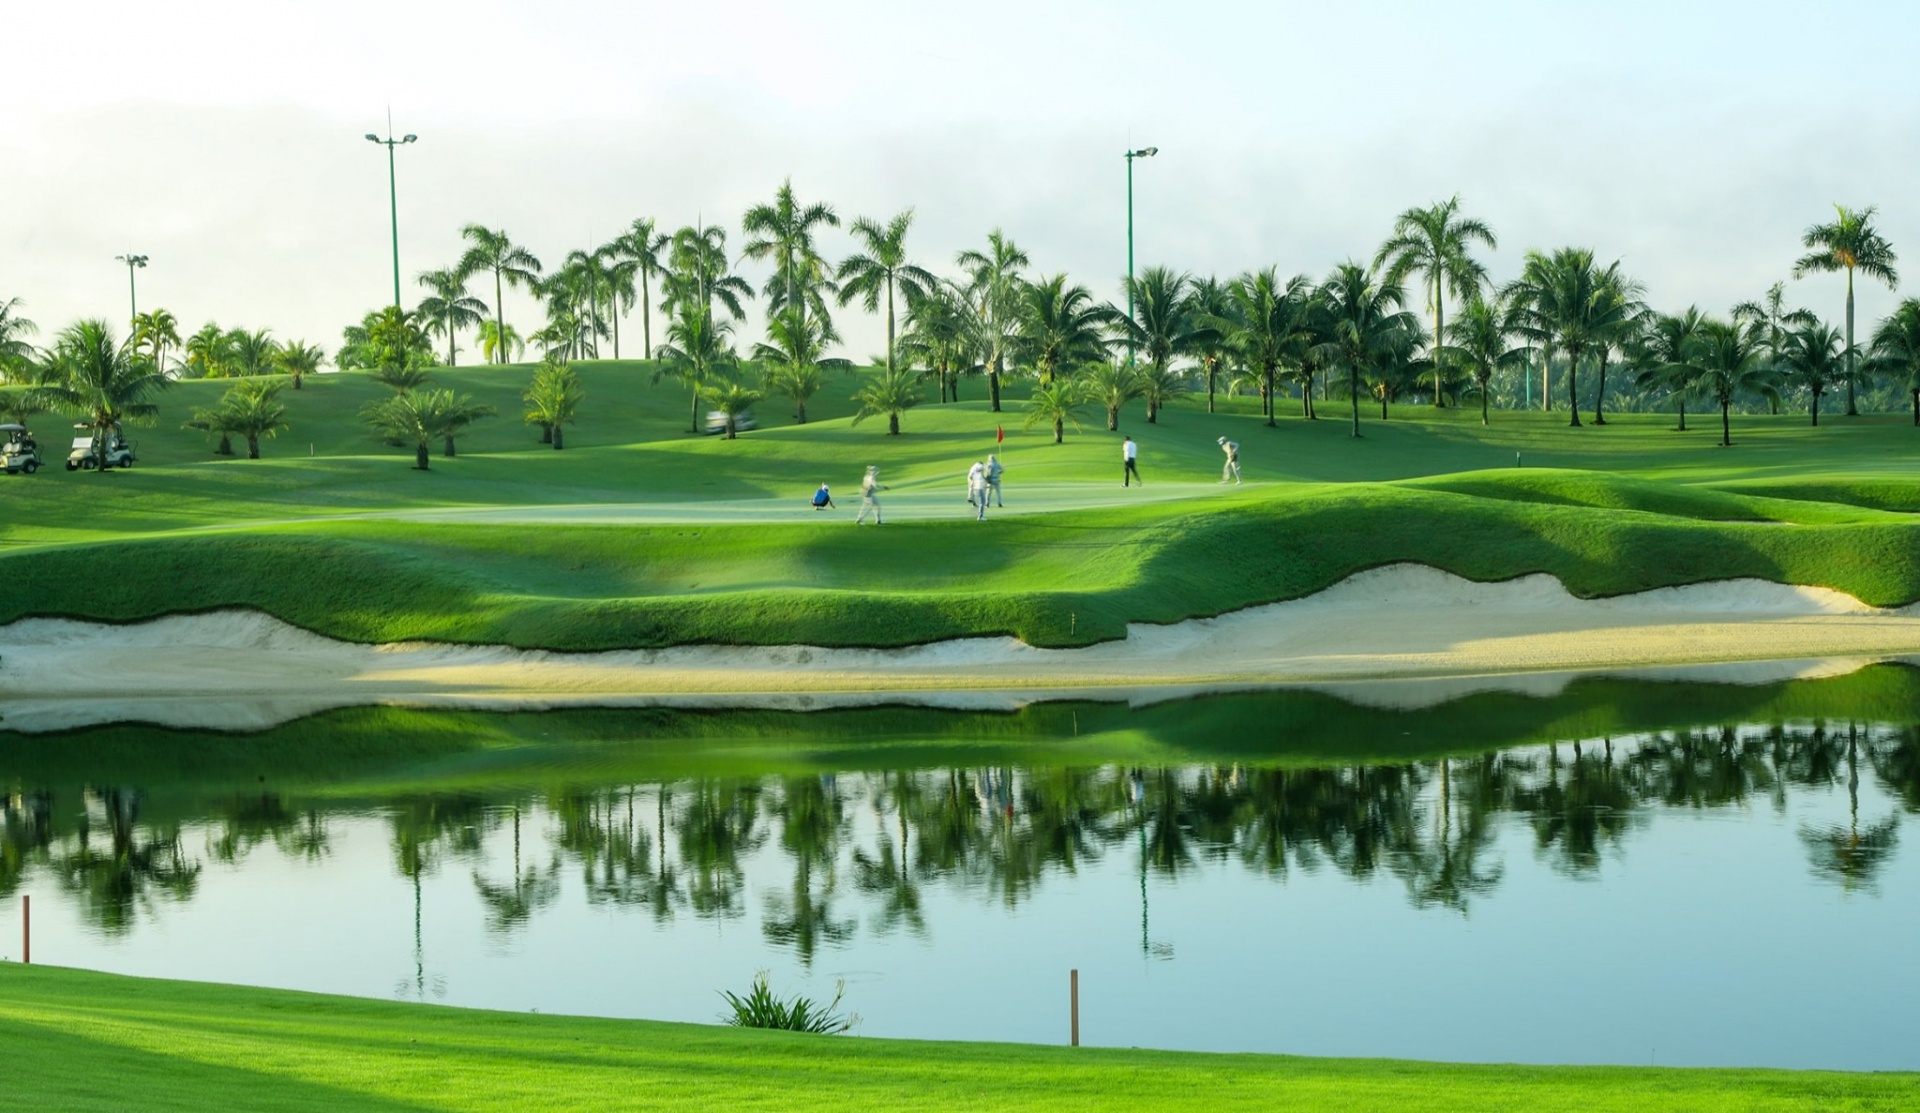 Quảng Bình: Phát triển thêm 2 sân golf tại Quảng Ninh và Bố Trạch - Viet Nam Smart City